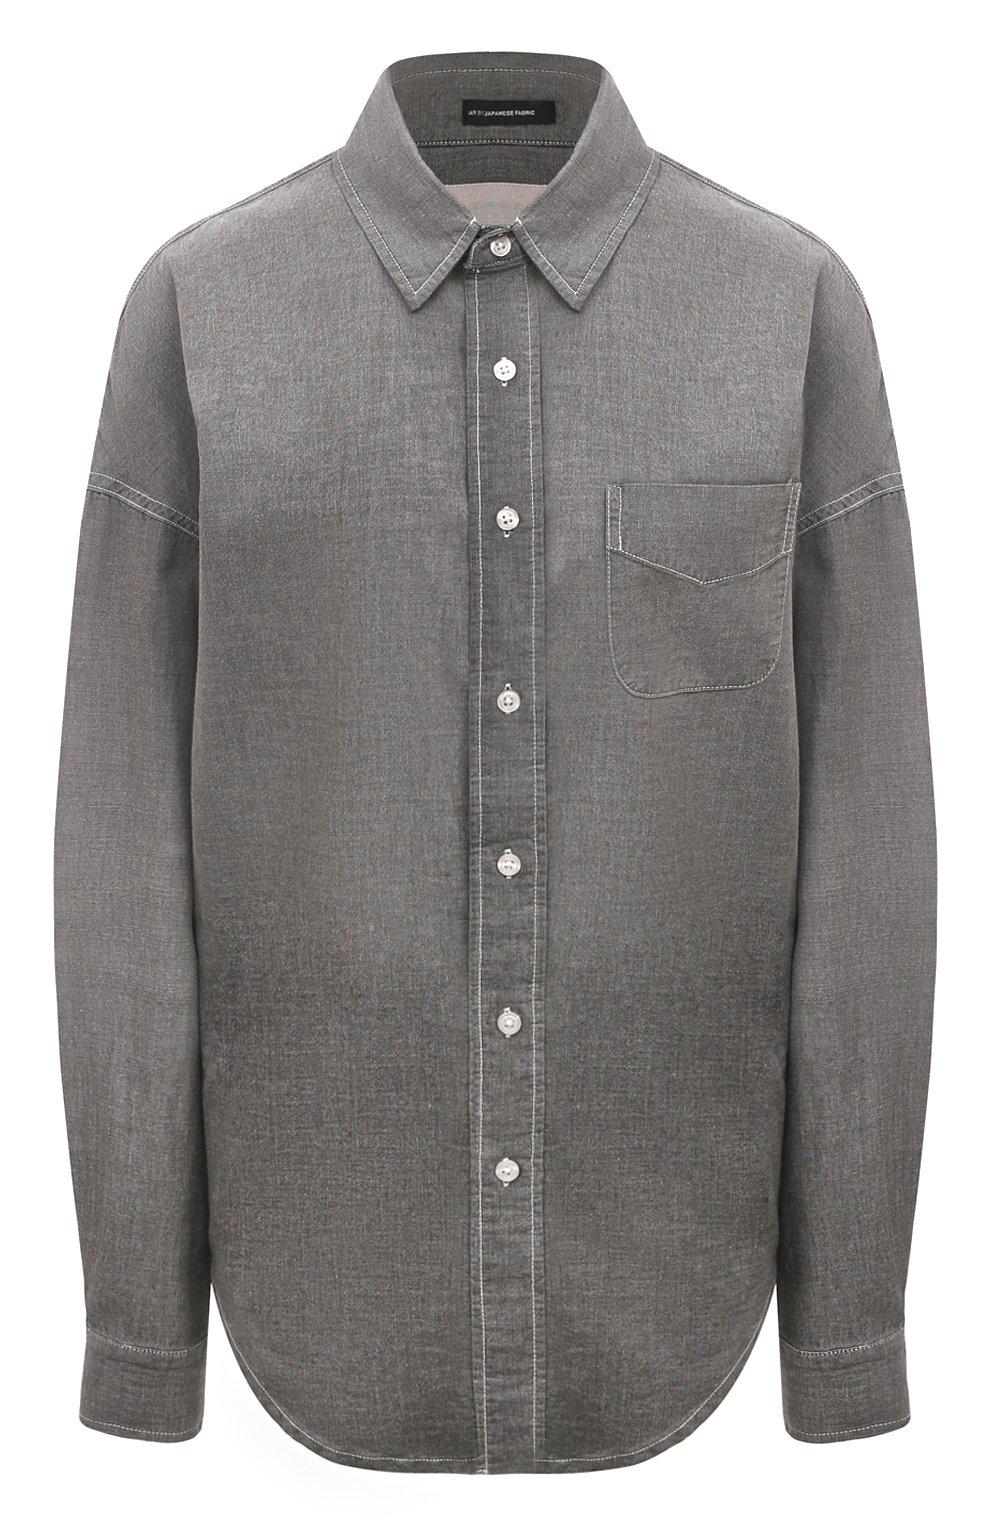 Cotton shirt, R13, RUB 99,850.